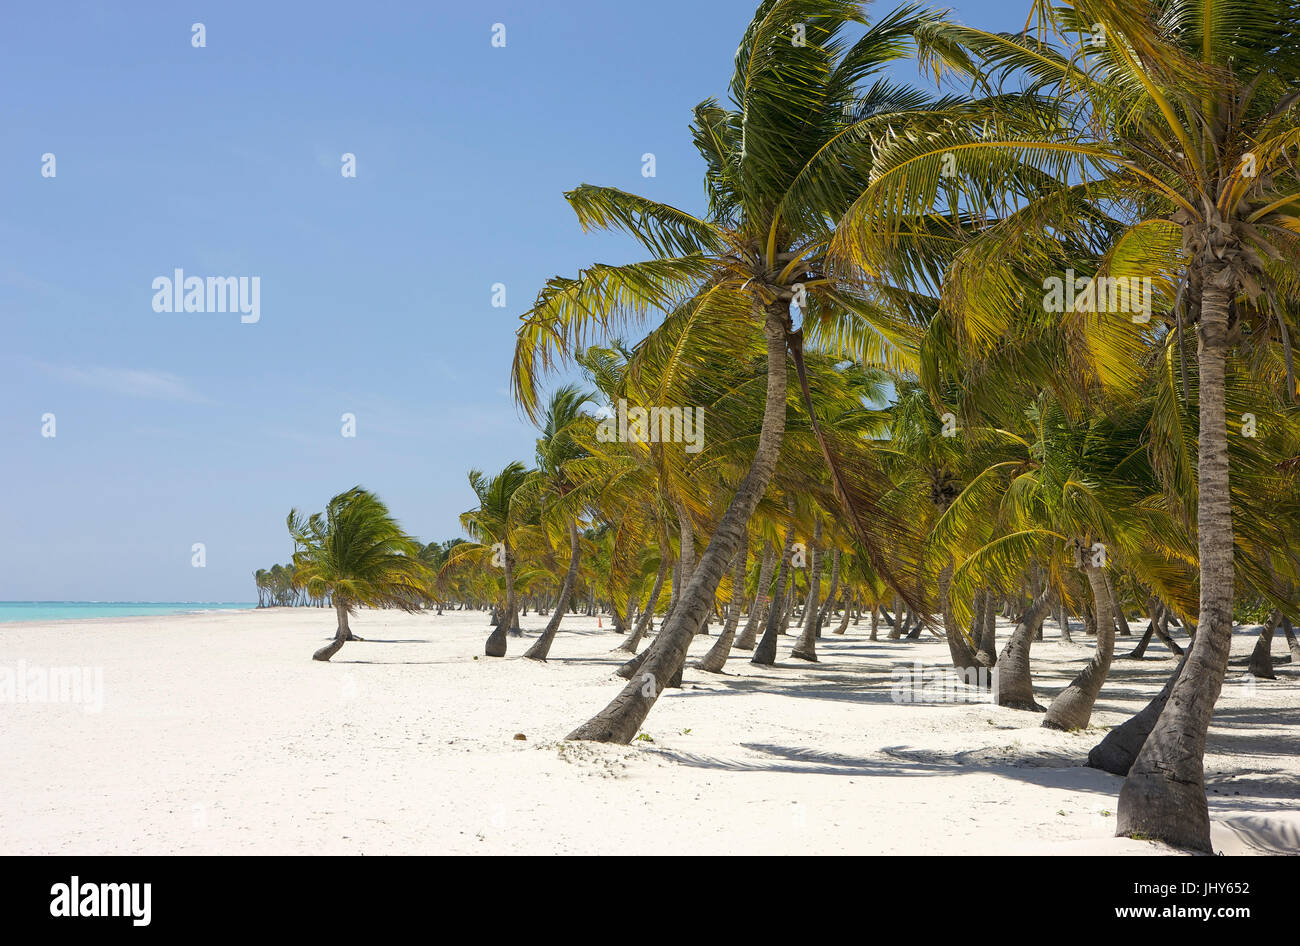 Cocotiers sur la plage de sable de Punta Cana, la République dominicaine, les Caraïbes - Coco Palm's à la plage près de Punta Cana, République Dominicaine Banque D'Images